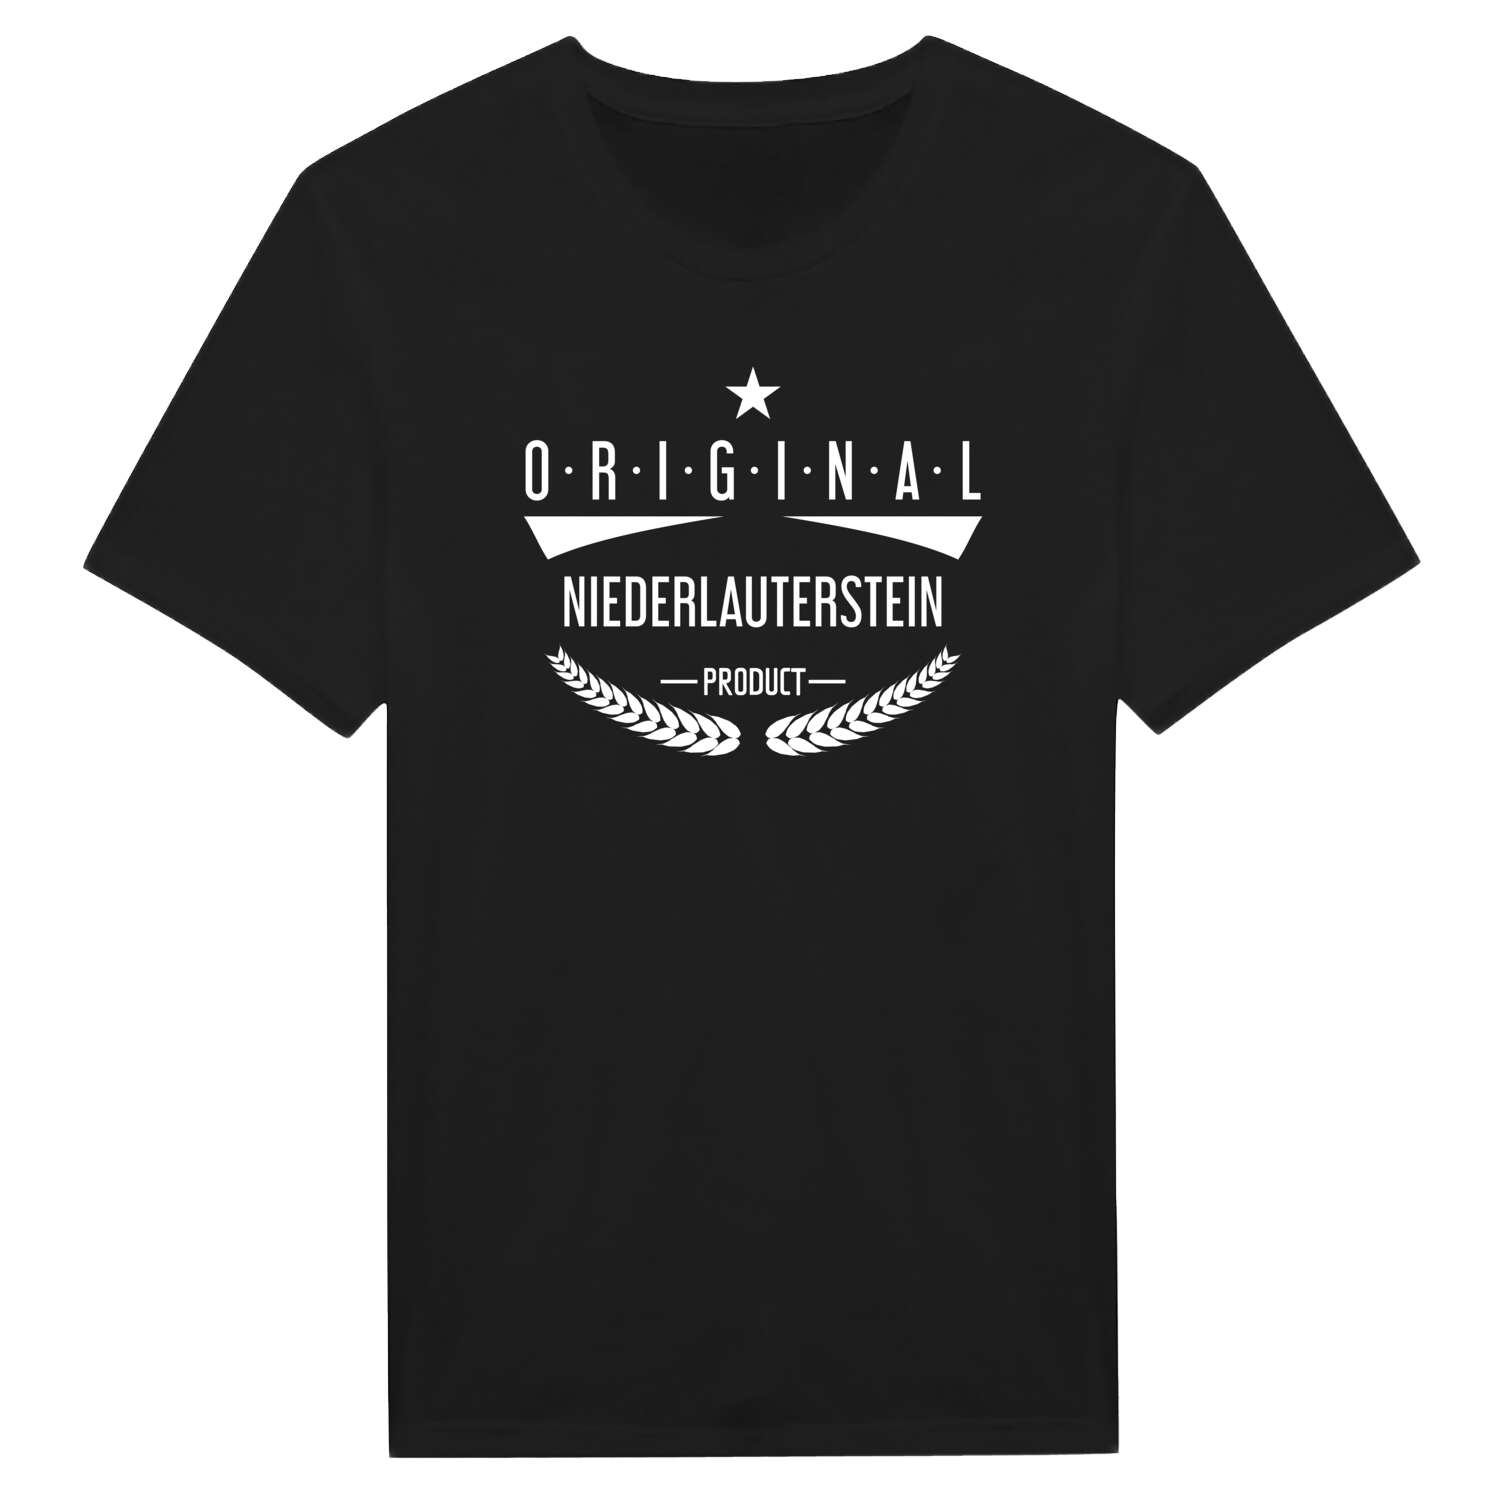 Niederlauterstein T-Shirt »Original Product«